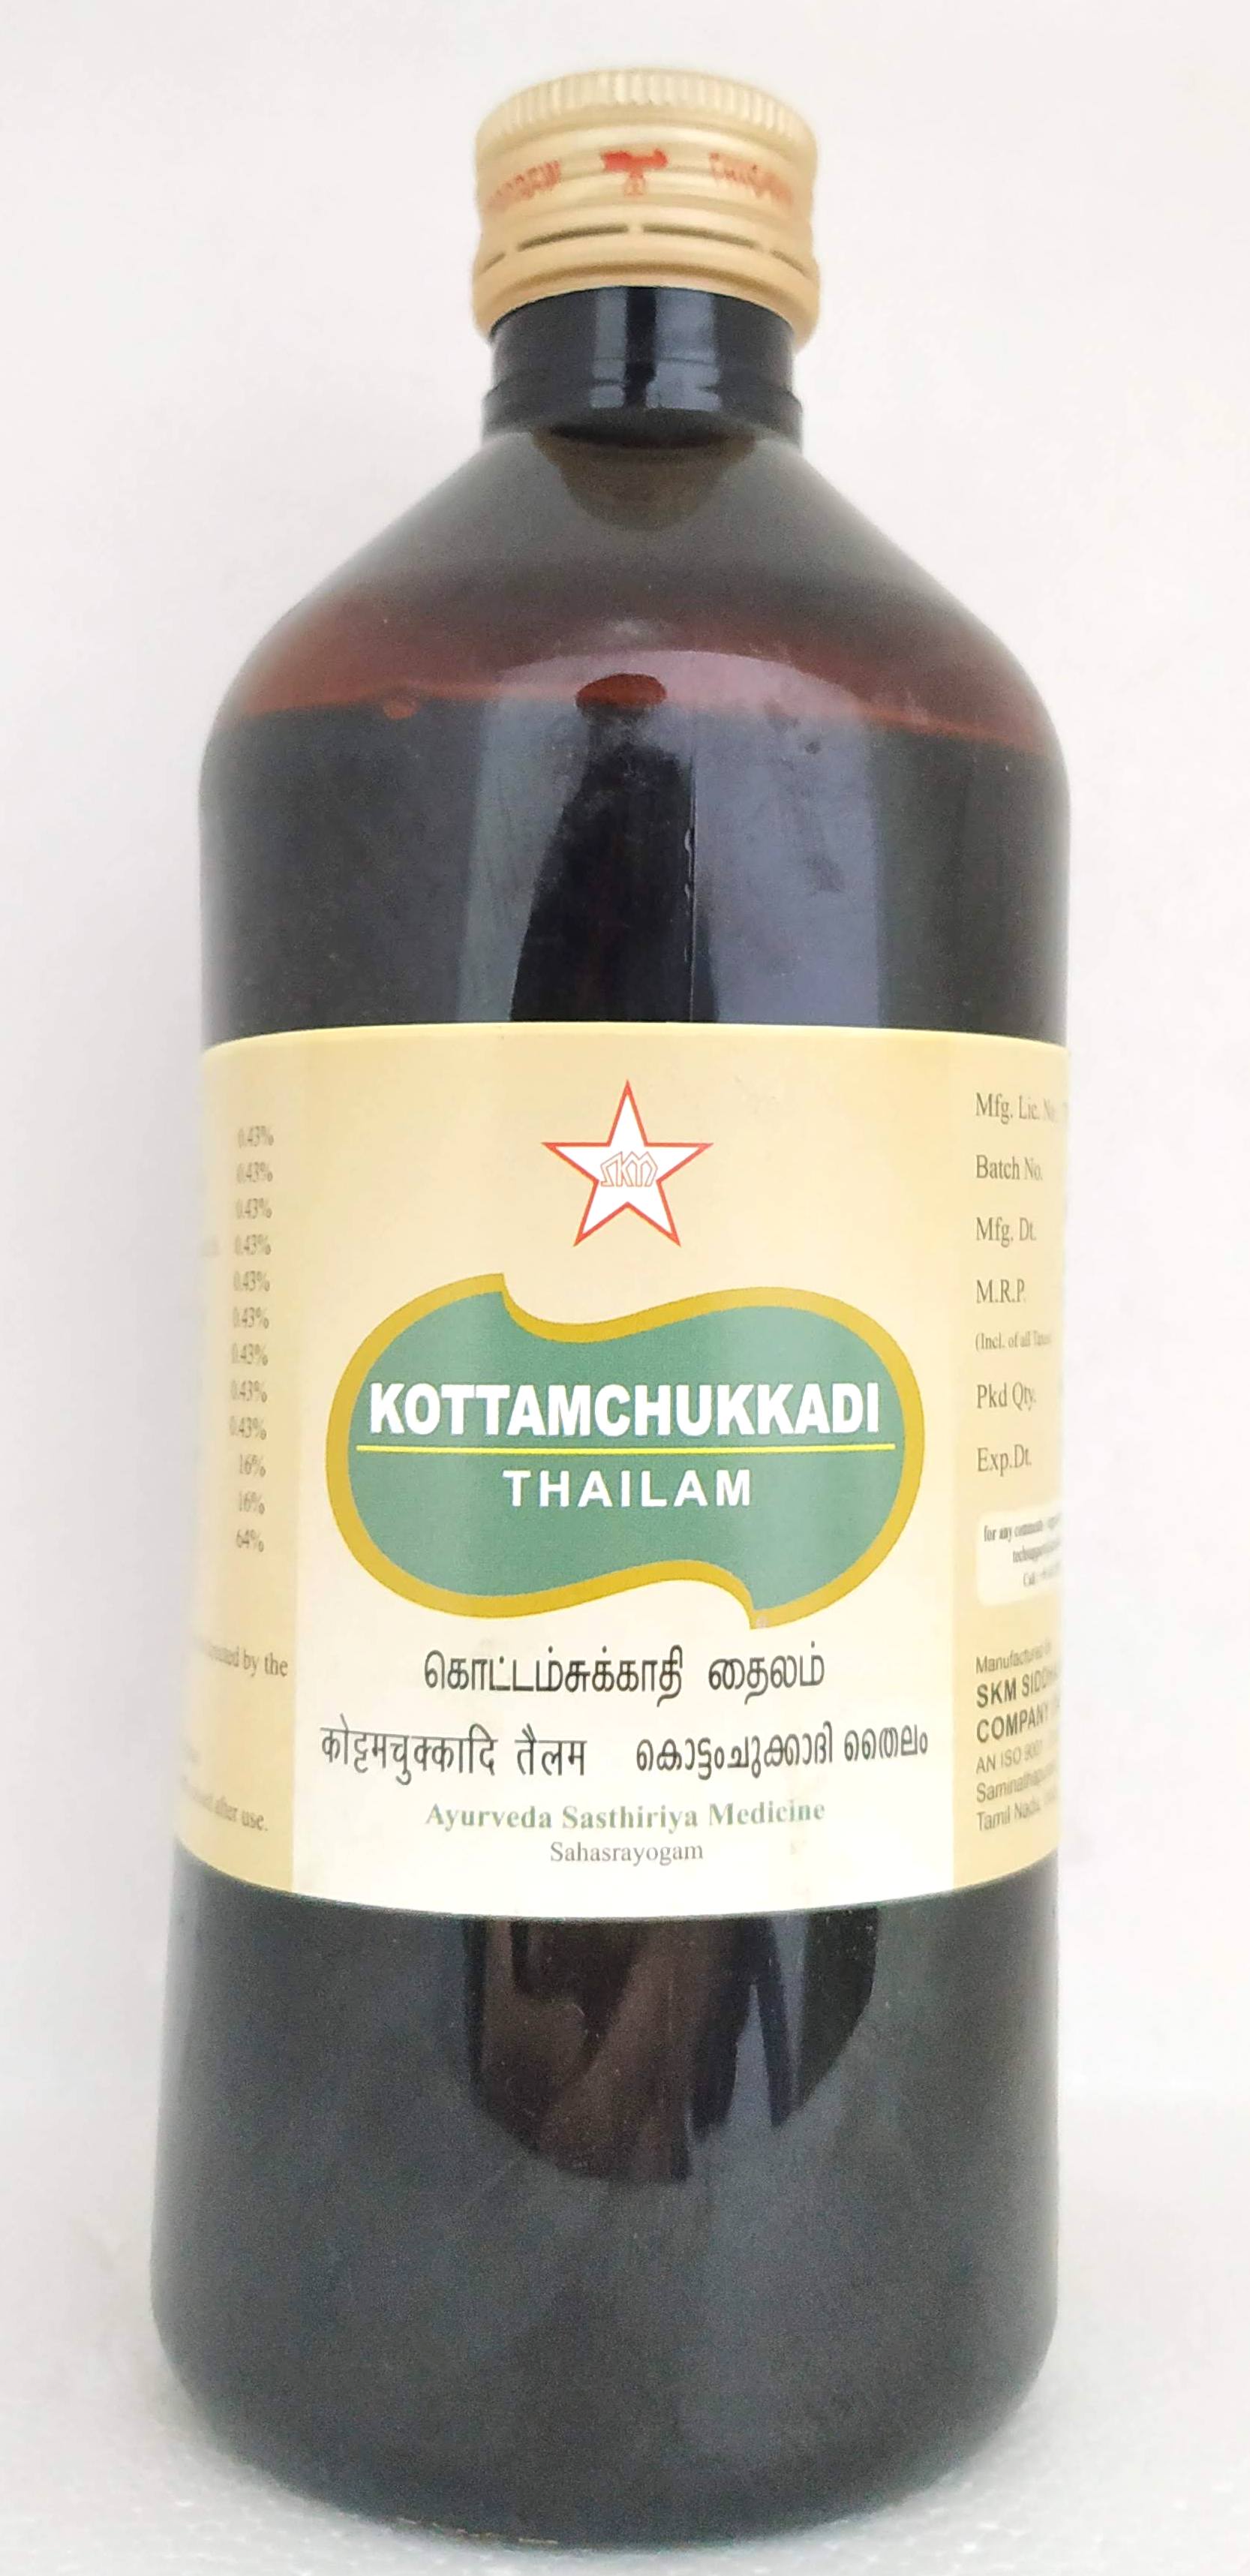 Shop Kottamchukkadi thailam 450ml at price 302.00 from SKM Online - Ayush Care